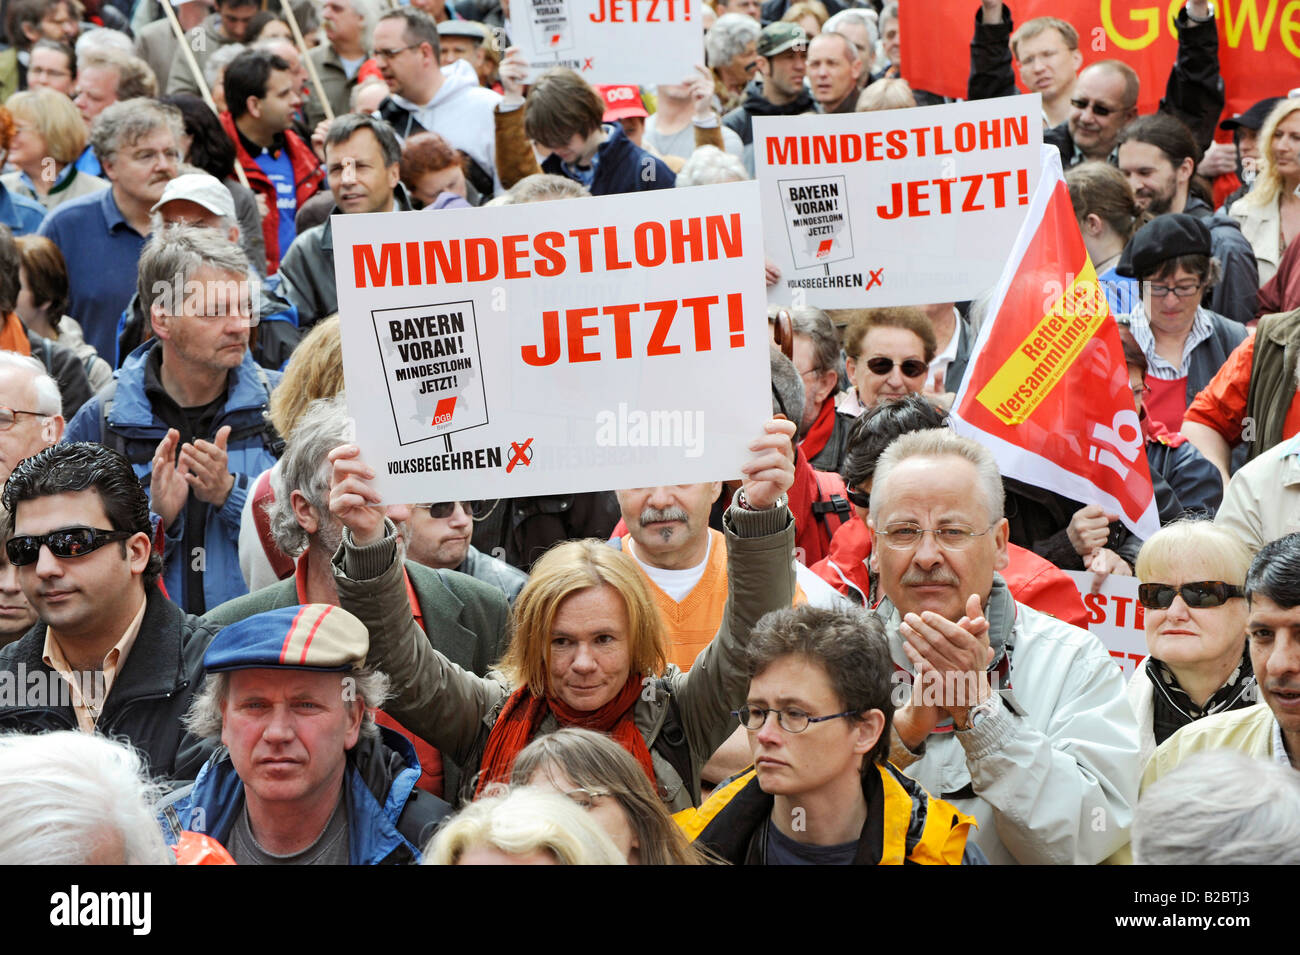 Schilder, Bayern Voran, Mindestlohn Jetzt, DGB Bayern Referendum, Demonstration am Marienplatz, 1. Mai, München, Oberbayern Stockfoto